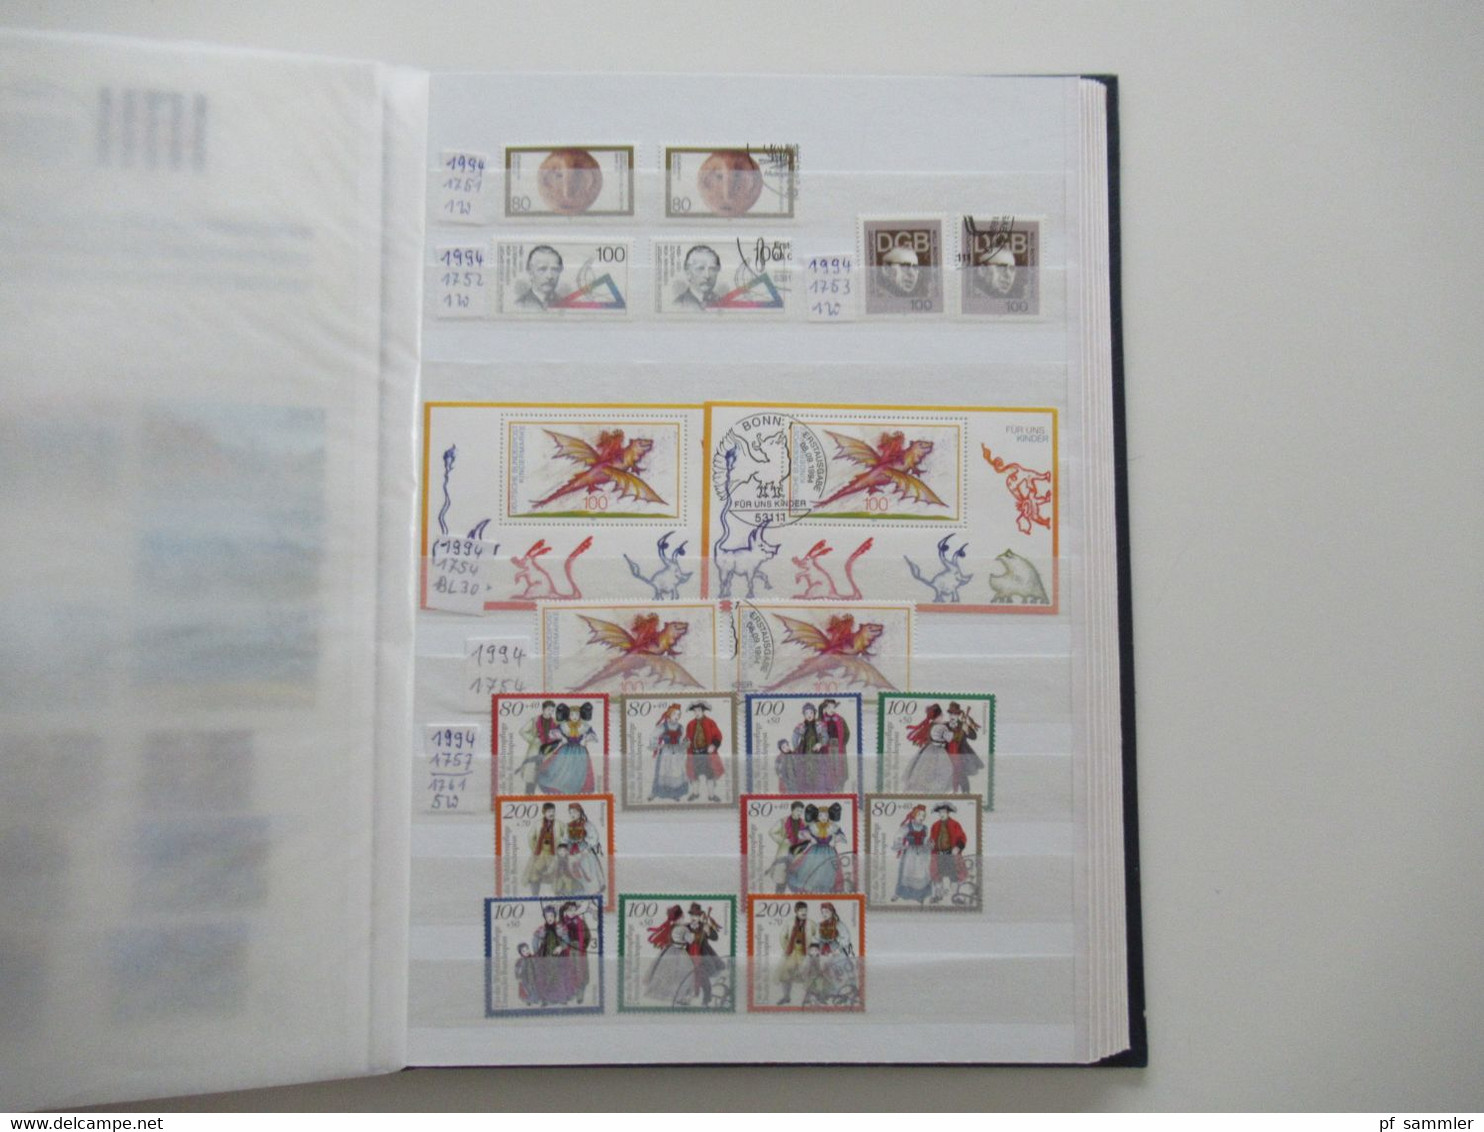 BRD / Bund 1981 - 1996 ** und gestempelt doppelte Sammlung im dicken Steckbuch! Saubere Qualität